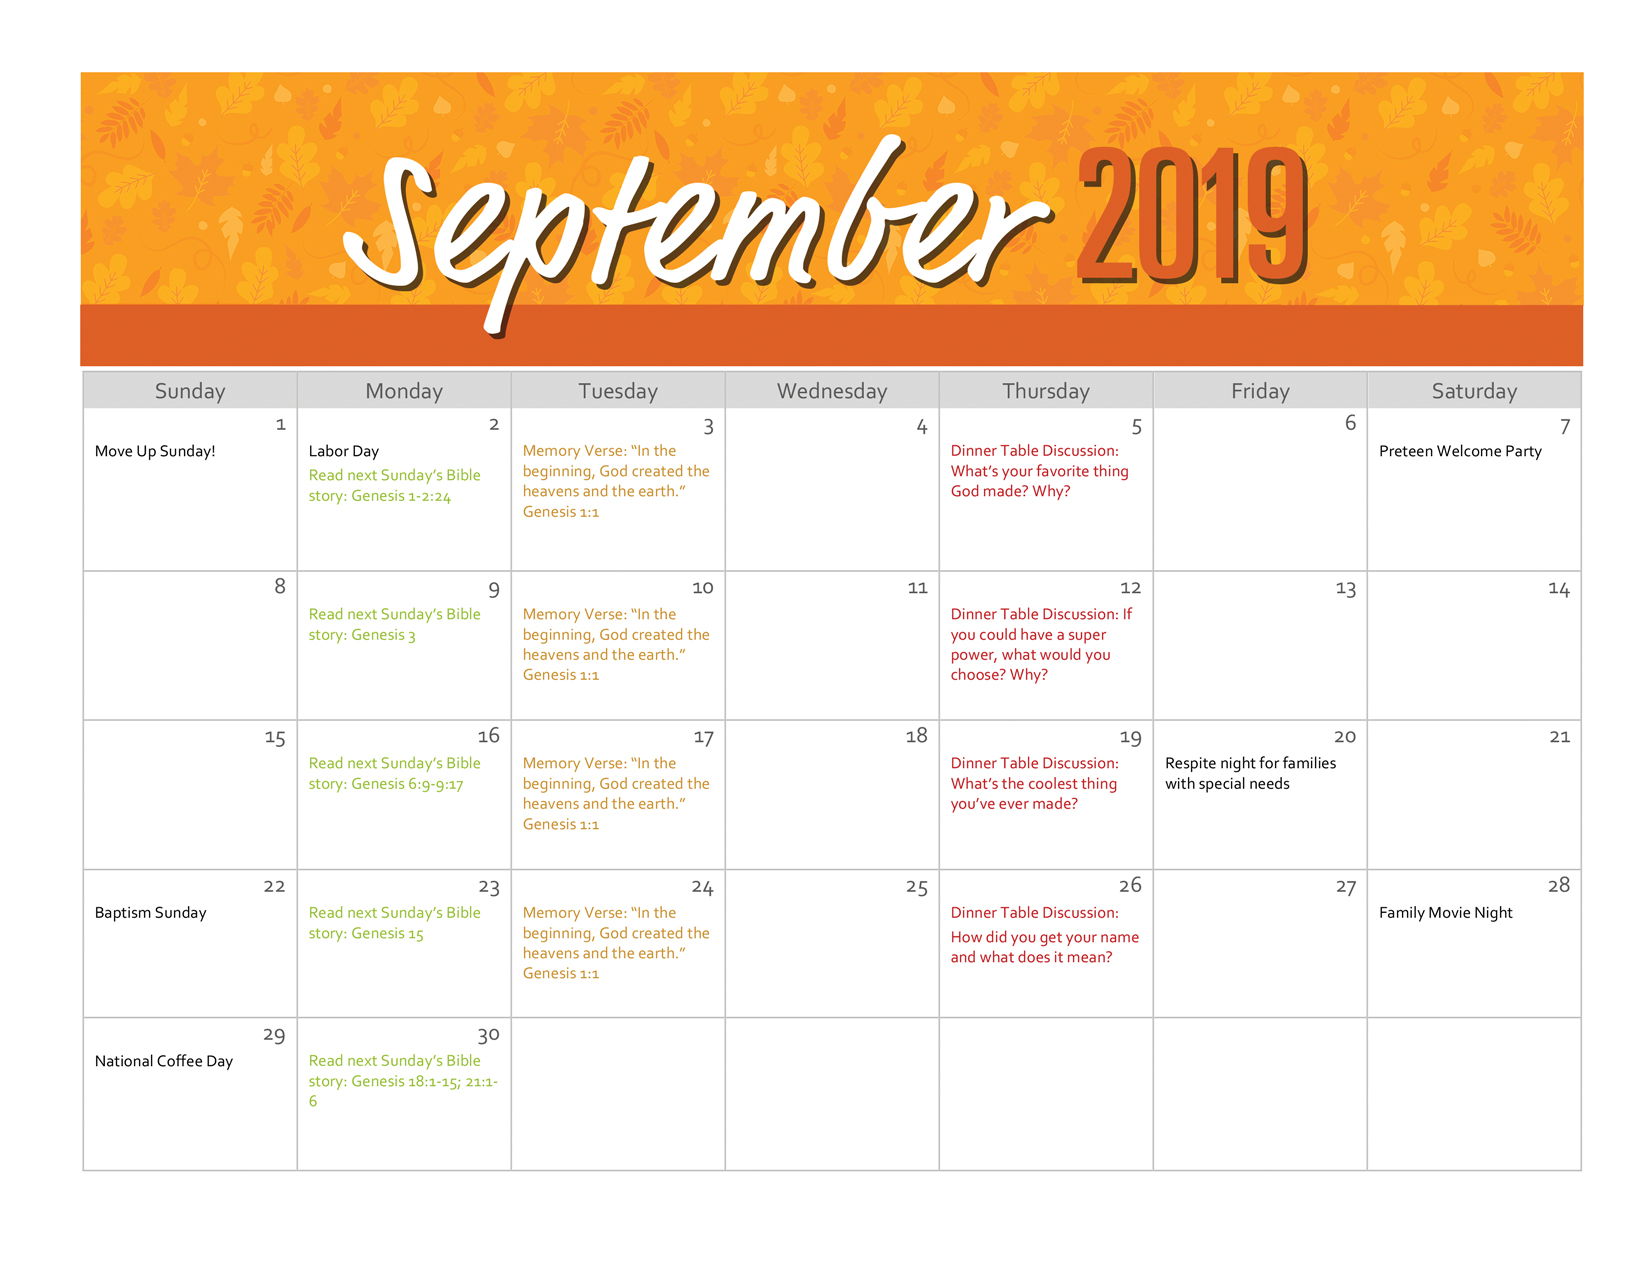 A sample ministry calendar for September 2019.